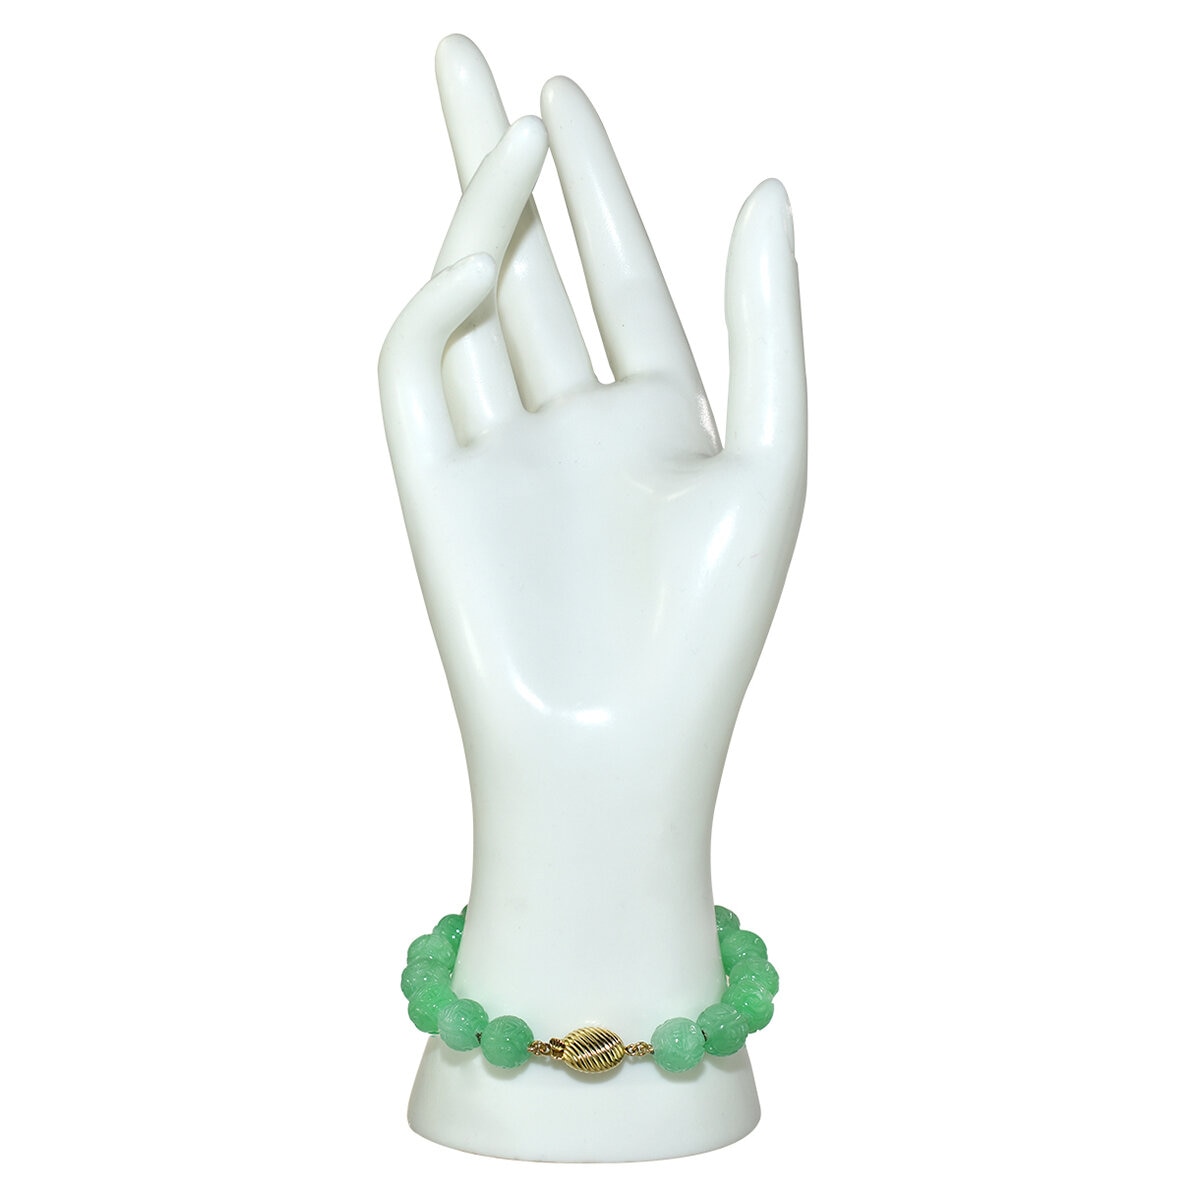 14KT YG Dyed Green Jade Carved Beads Knot Bracelet